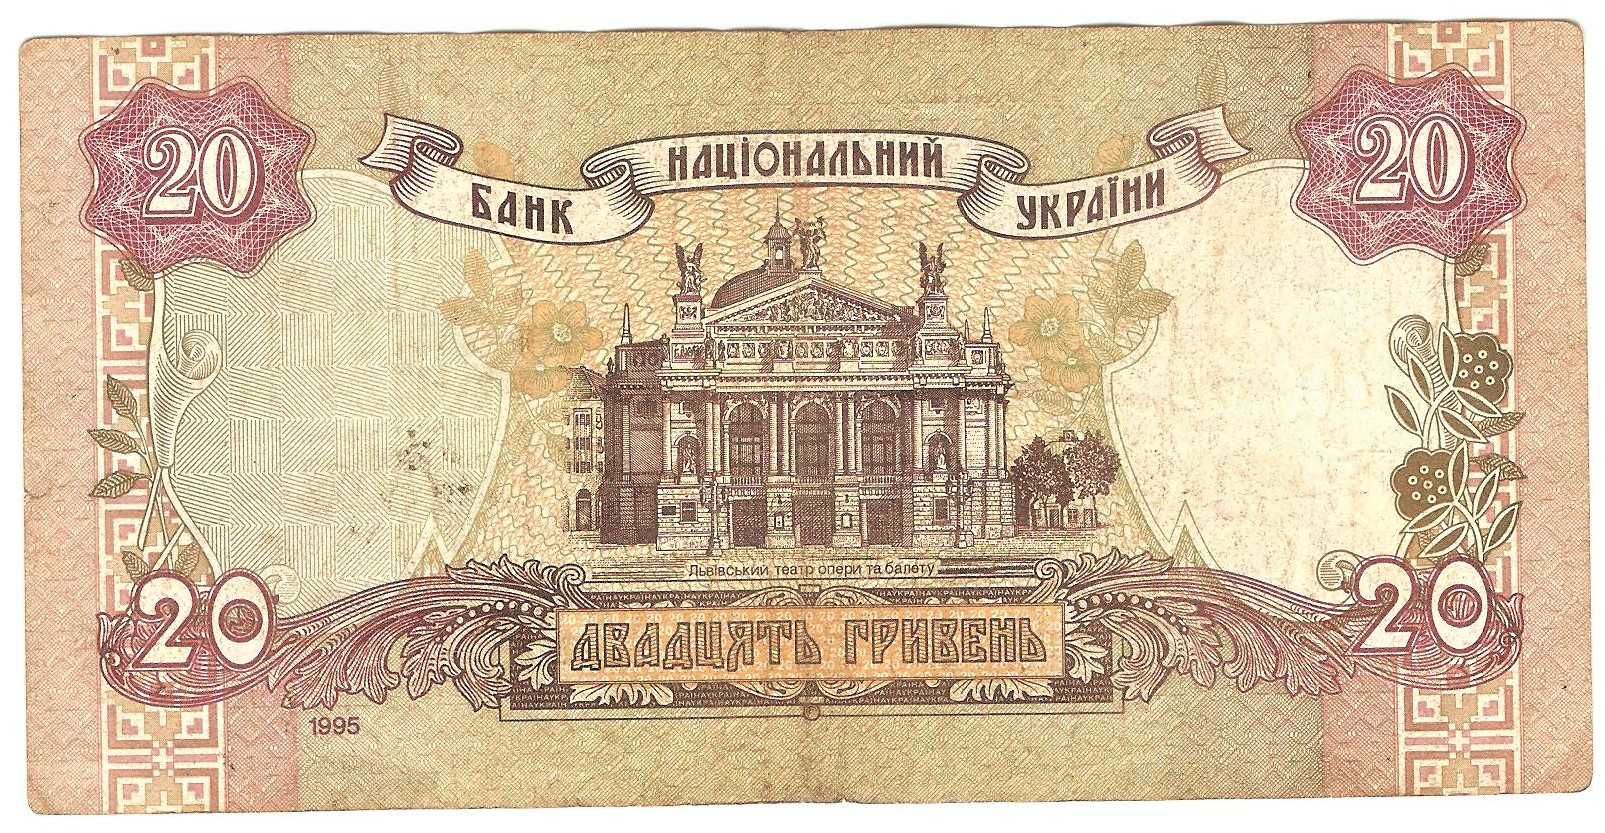 Банкнота / денежный знак / бона Украины 20 гривень 1995 года